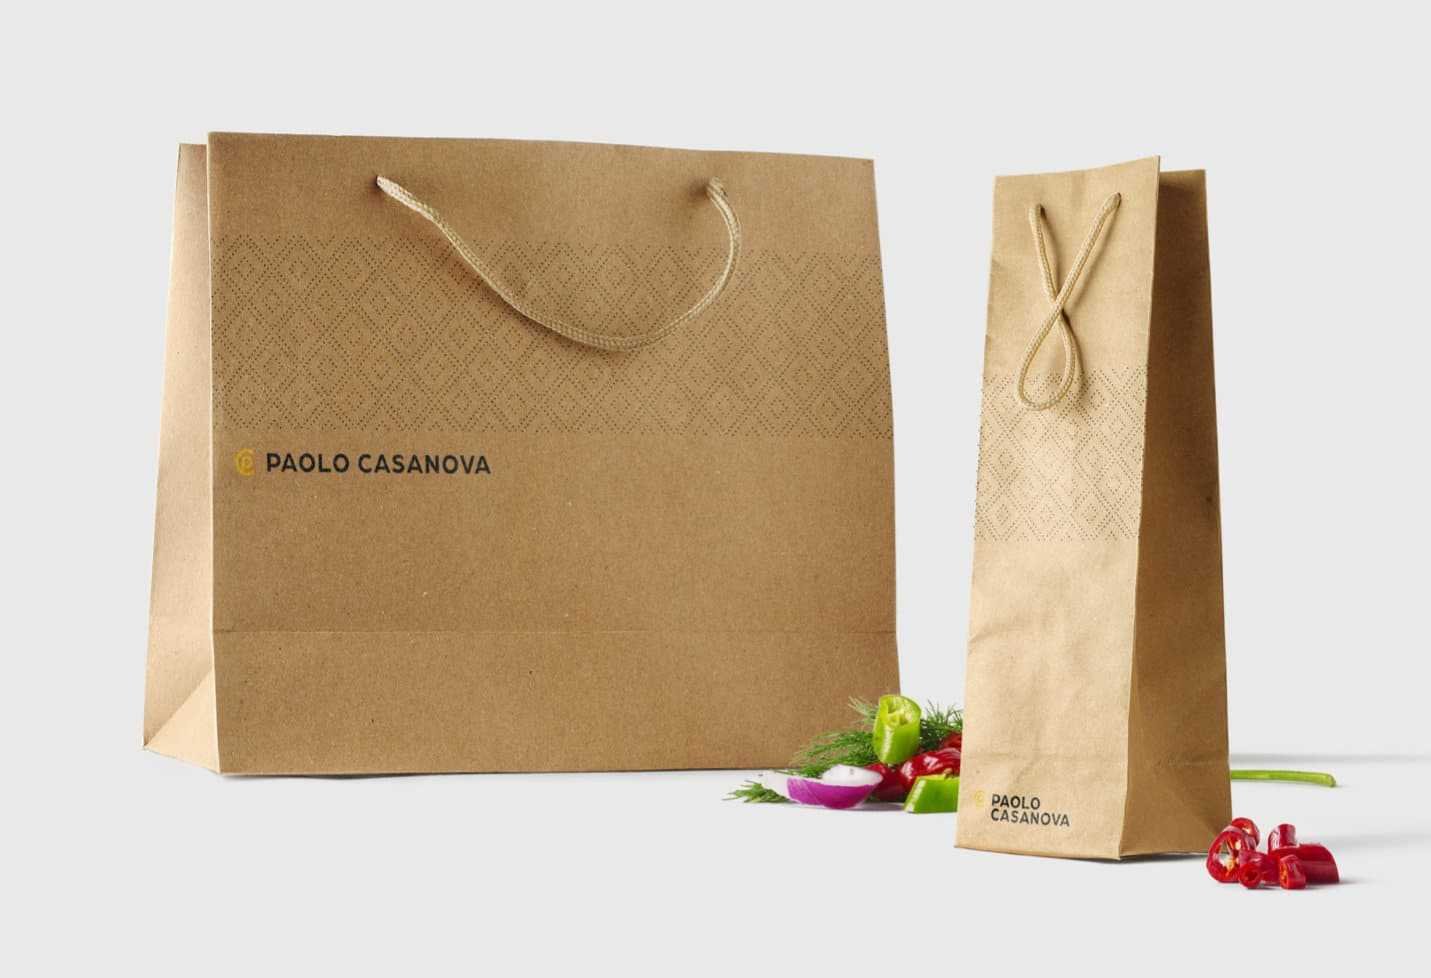 PaoloCasanova bags